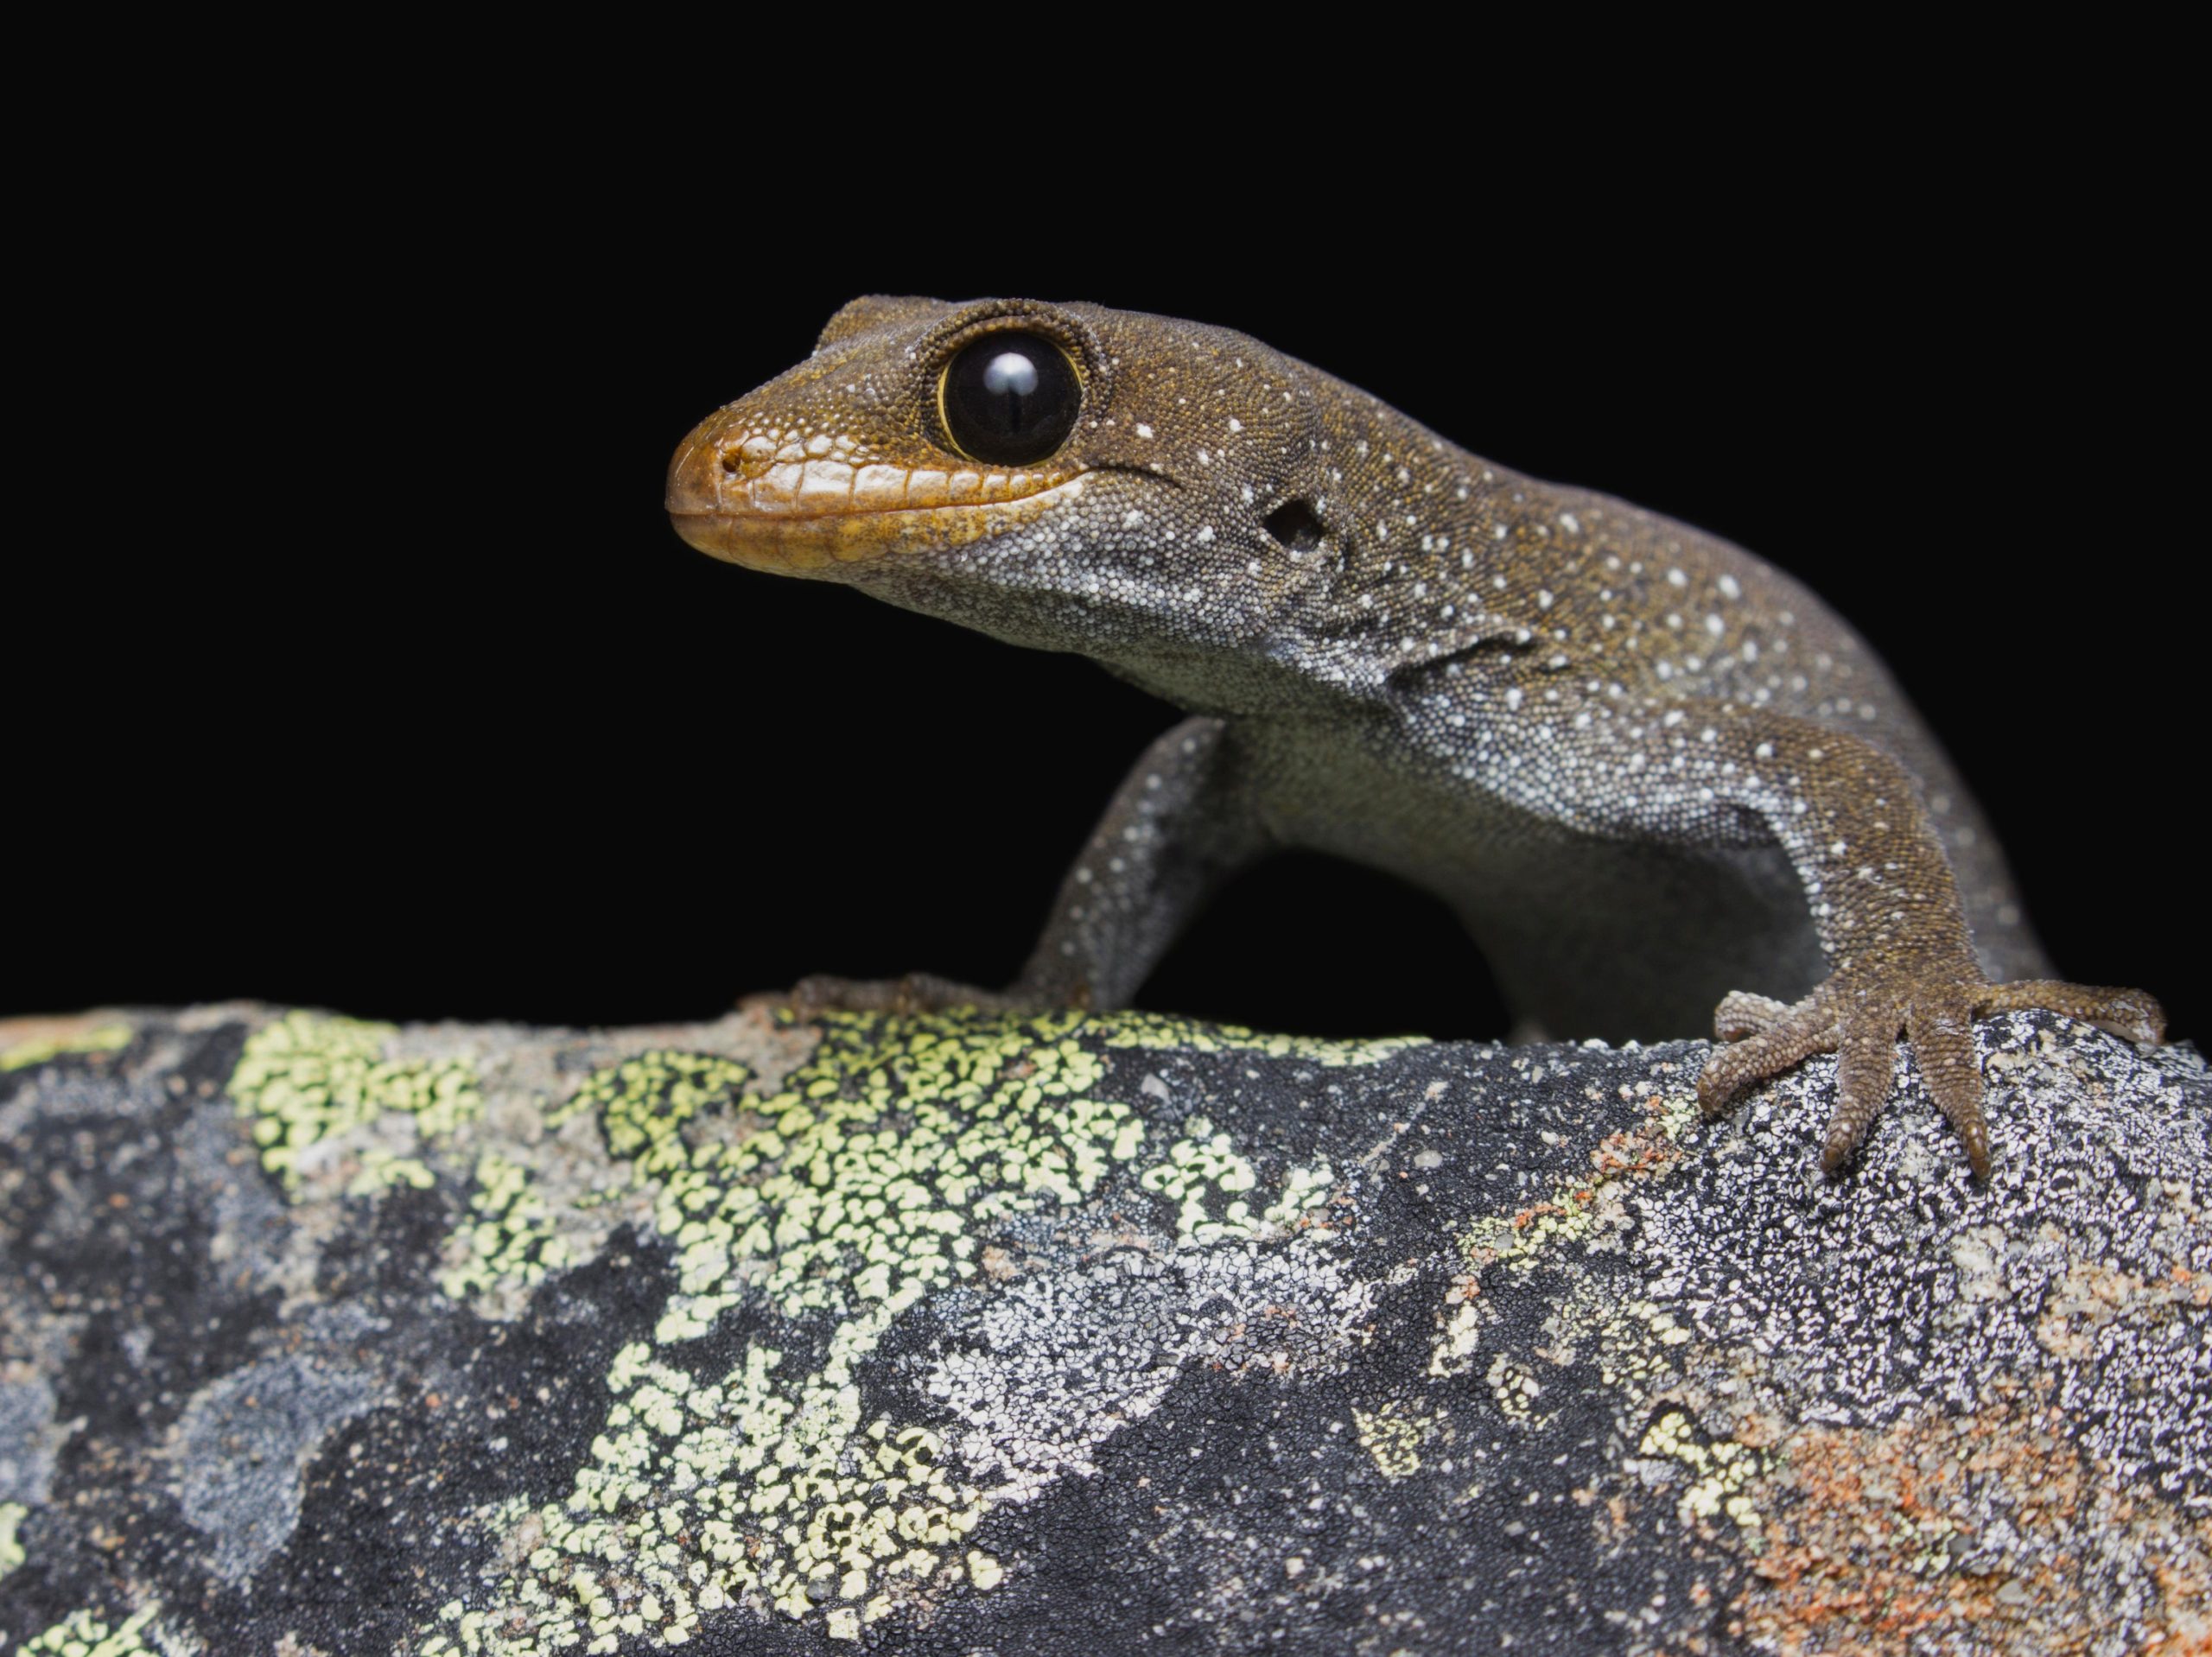 A gecko on a rock